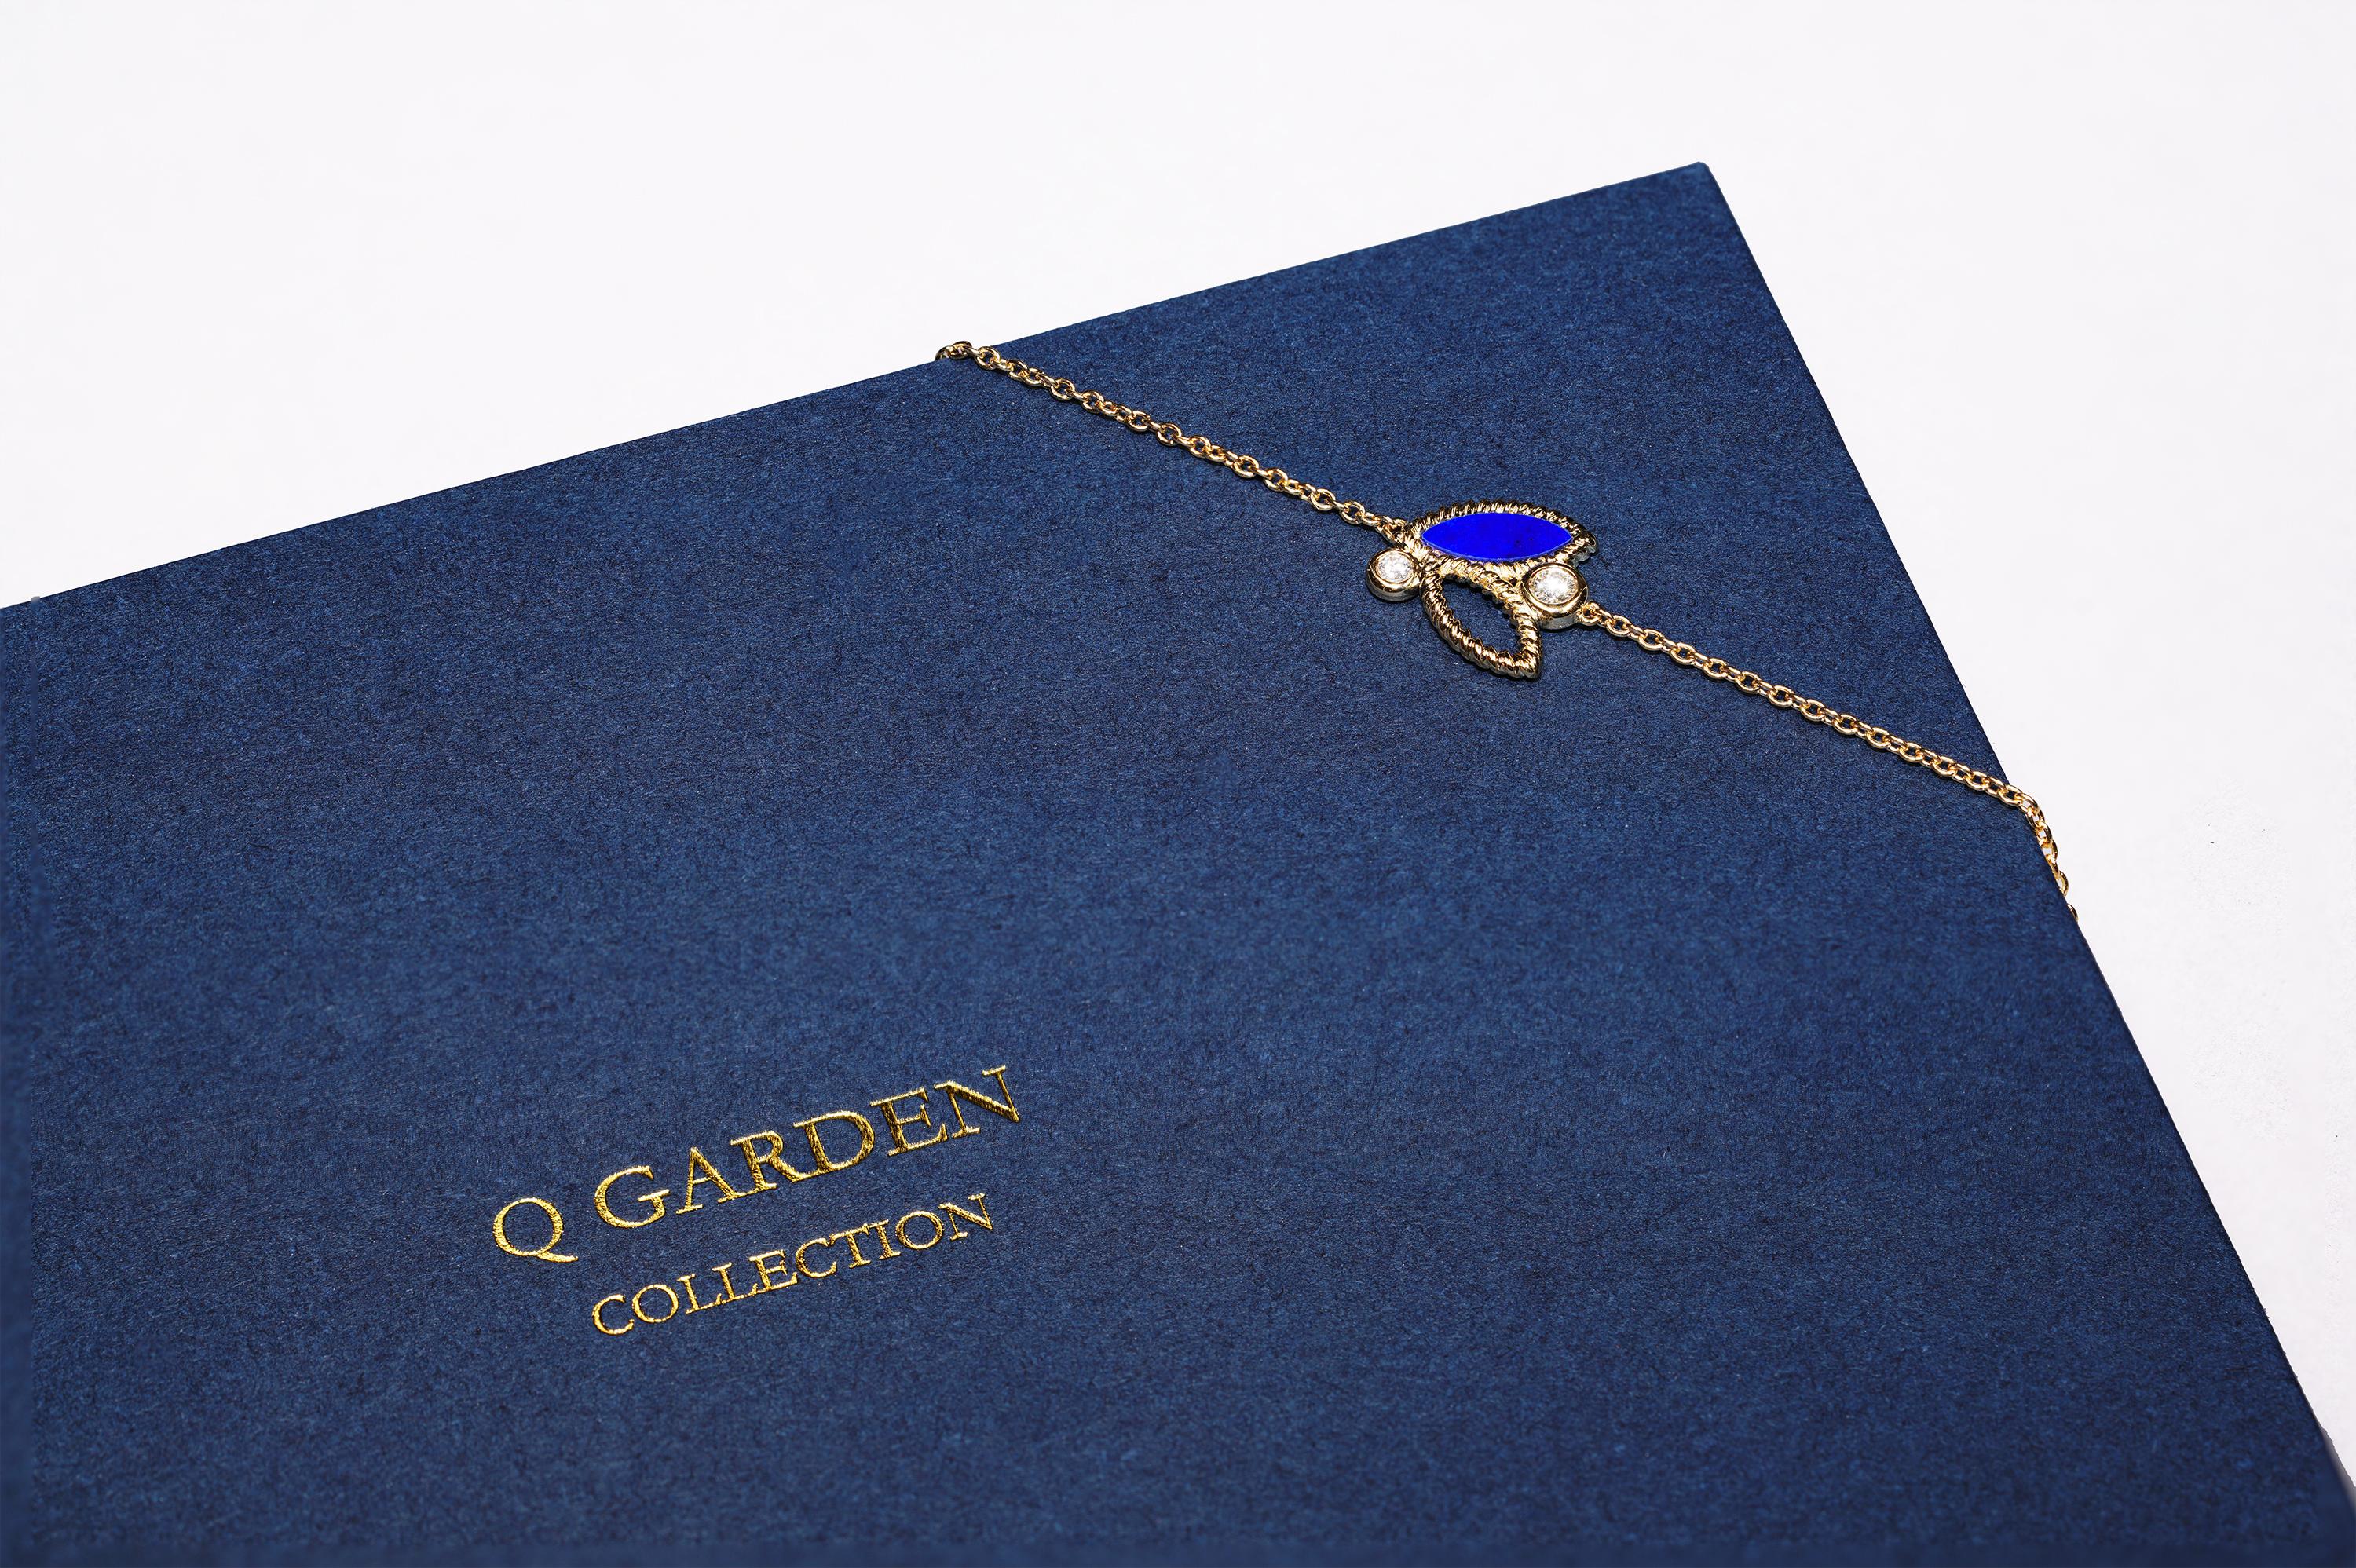 or jaune 18k, 2,9g.  
3 diamants, Poids total en carats : 0,12ct 
Pierre : Lapis Lazuli

Ce charmant mini-bracelet est la pièce idéale pour toute occasion. Dernière née de la populaire collection Q Garden, la collection Mini Q Garden comprend des